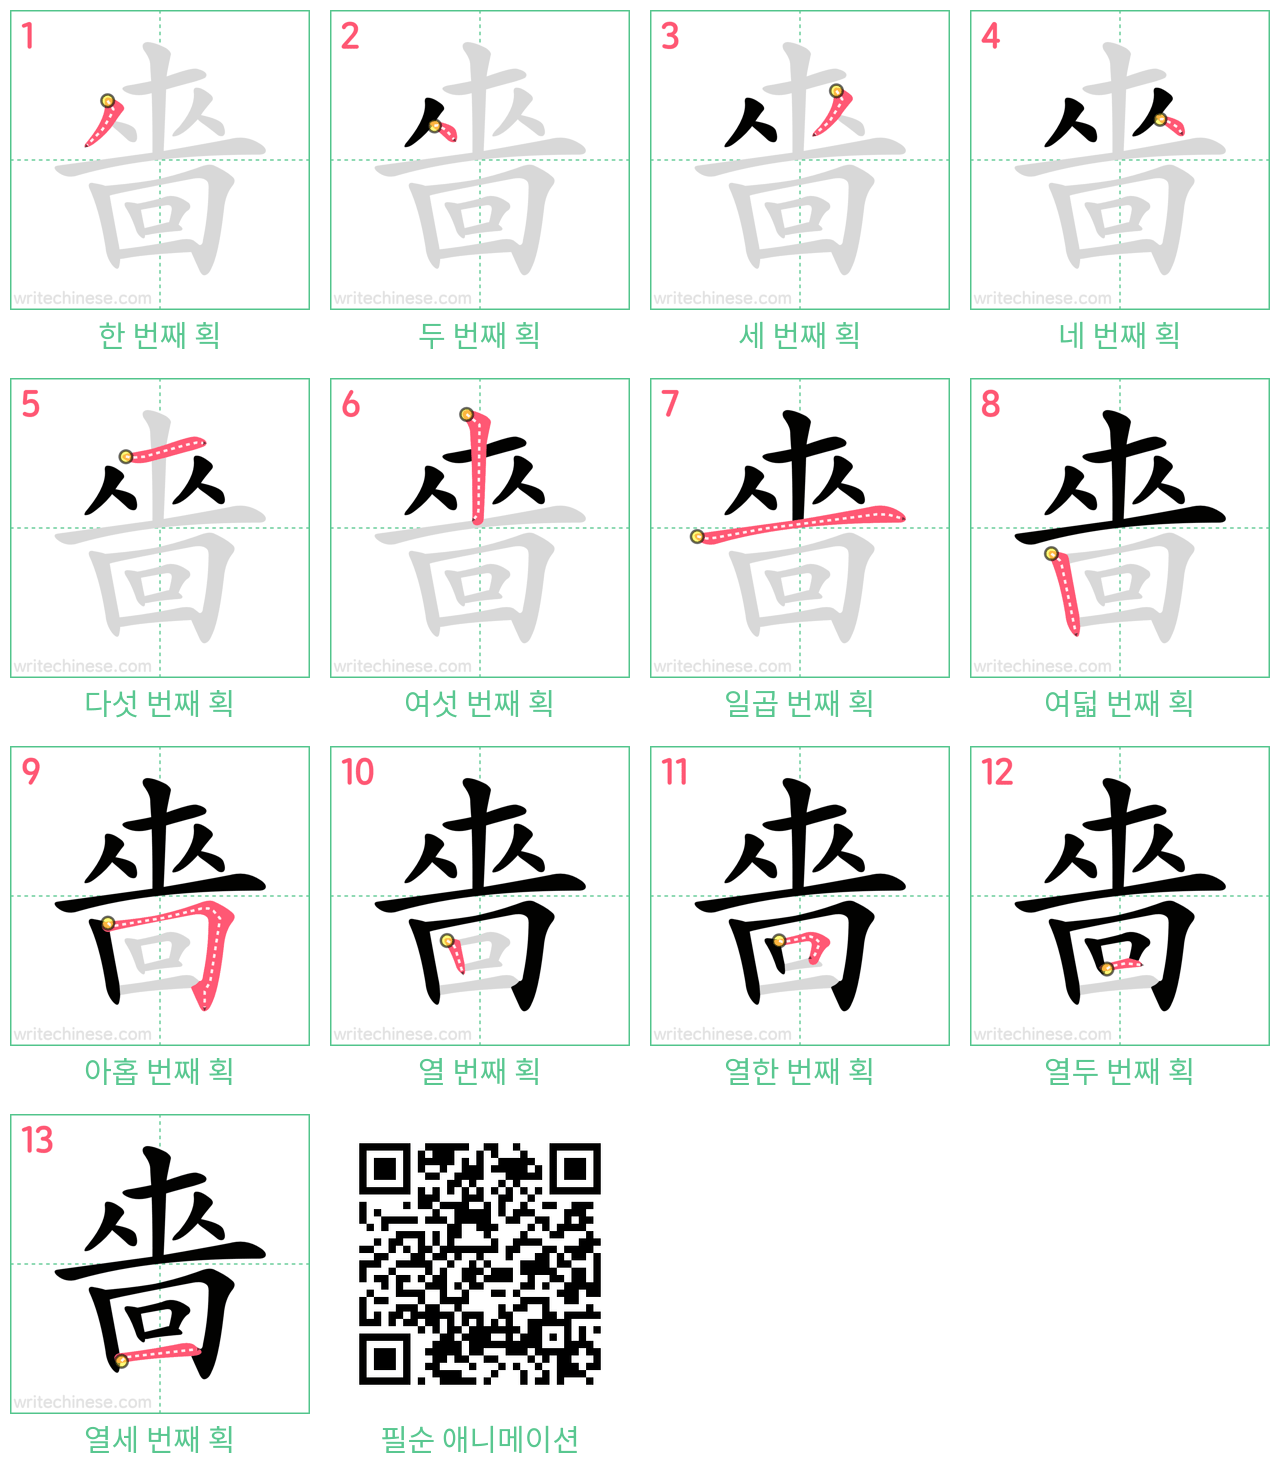 嗇 step-by-step stroke order diagrams